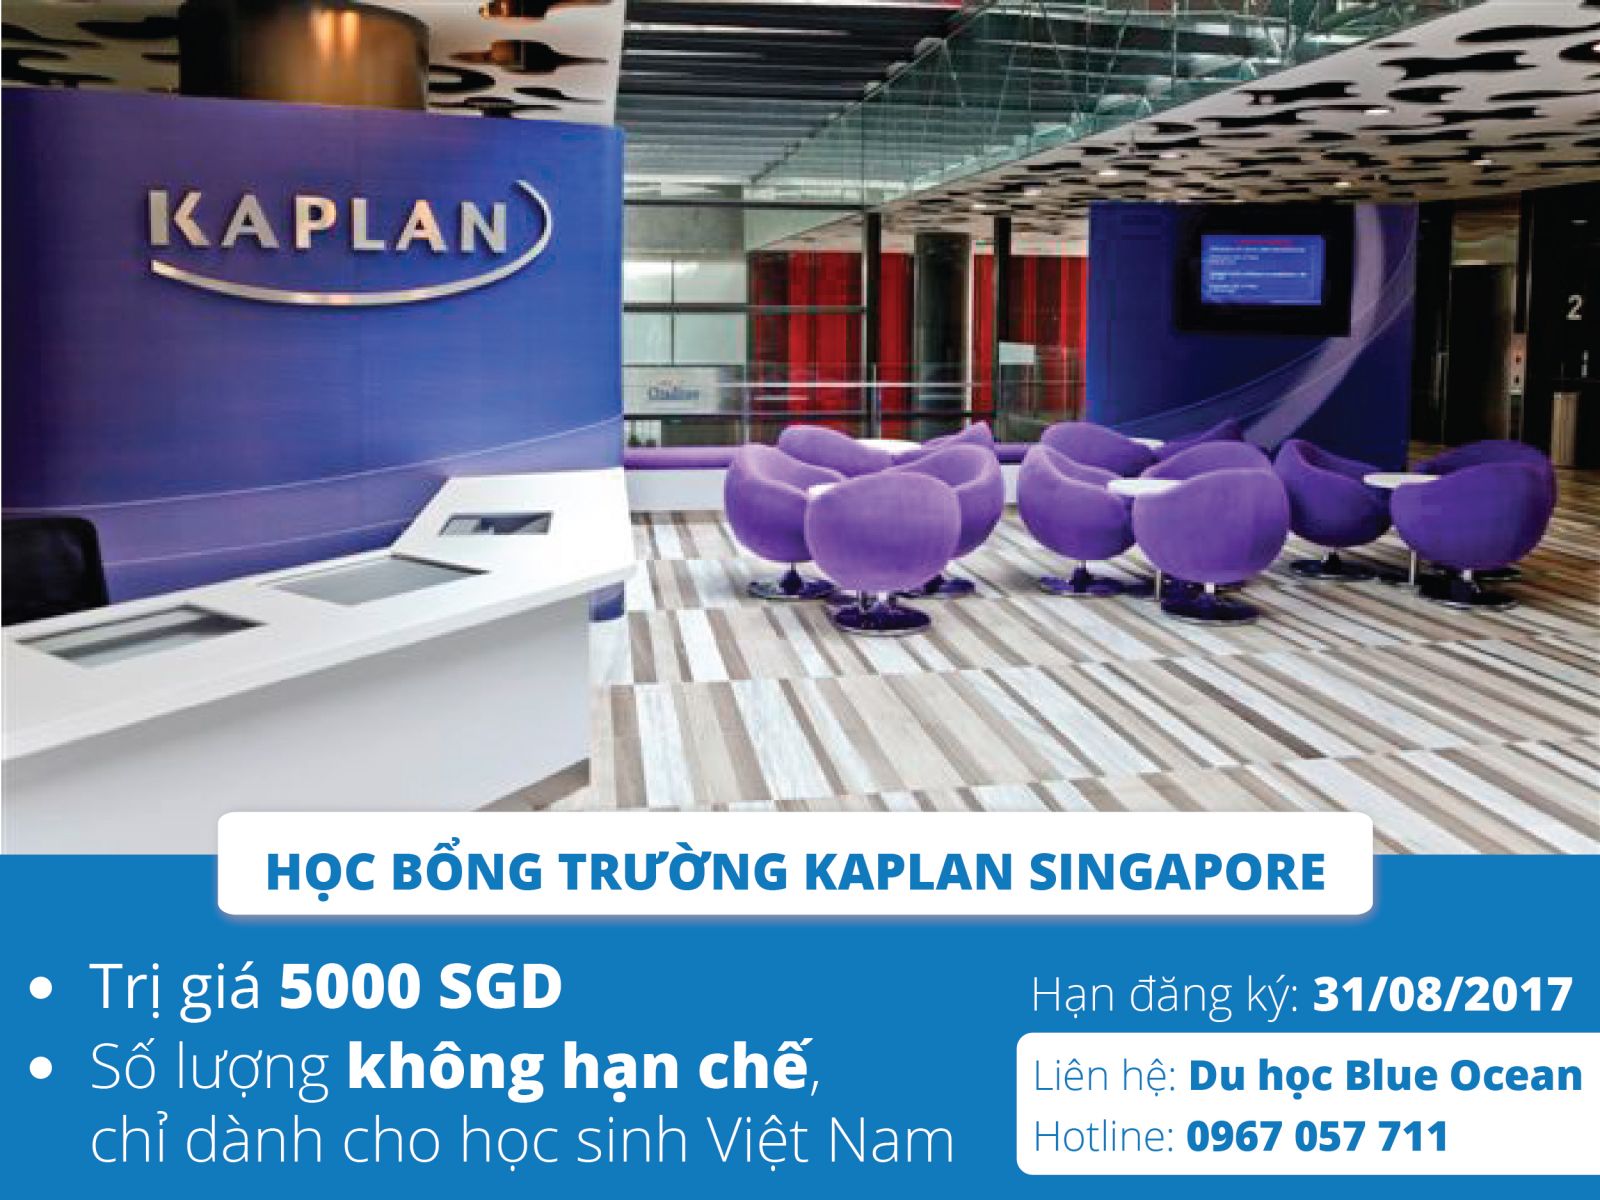 Làm thế nào để chắc chắn nhận được học bổng S$5000 từ Kaplan,Singapore